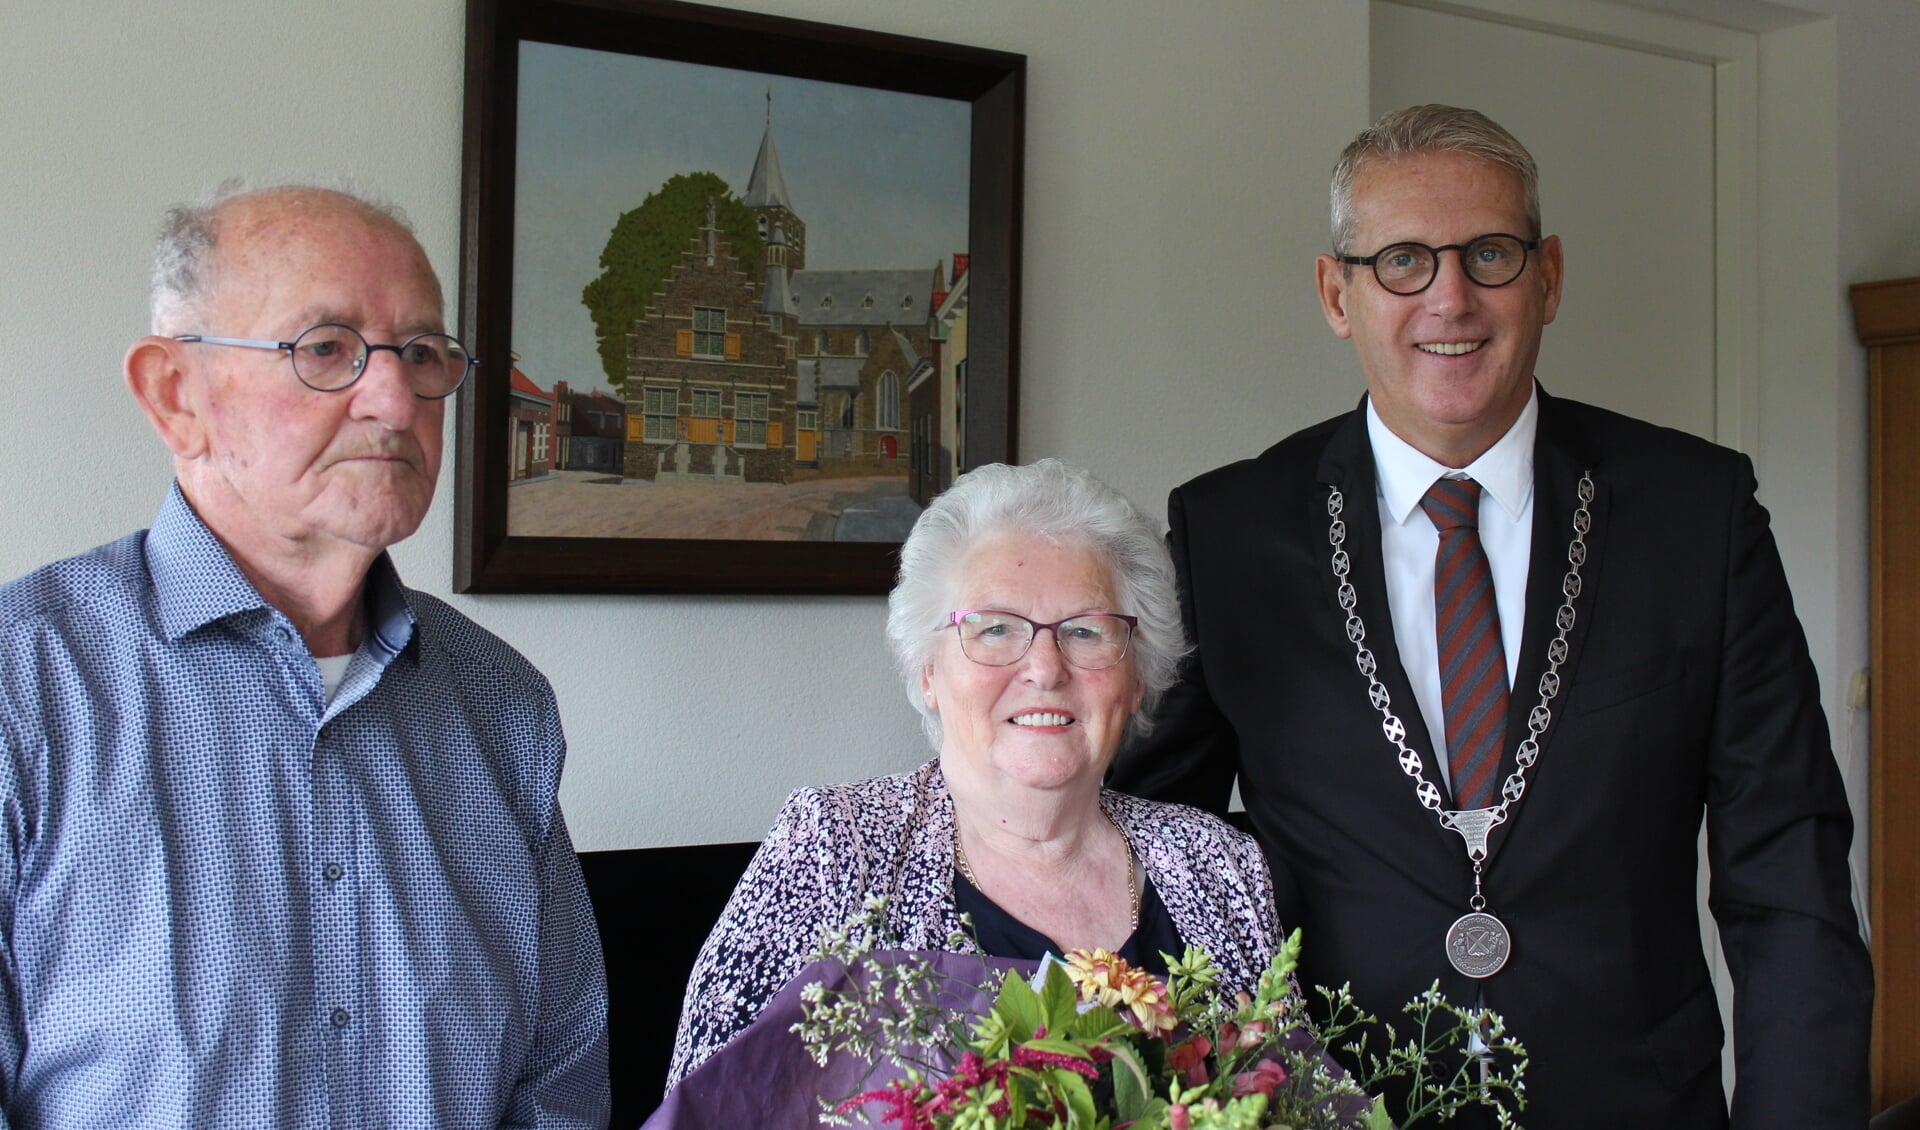 Het echtpaar Michielsen uit Steenbergen keek erg uit naar het bezoek van de burgemeester voor hun 60-jarig huwelijk.